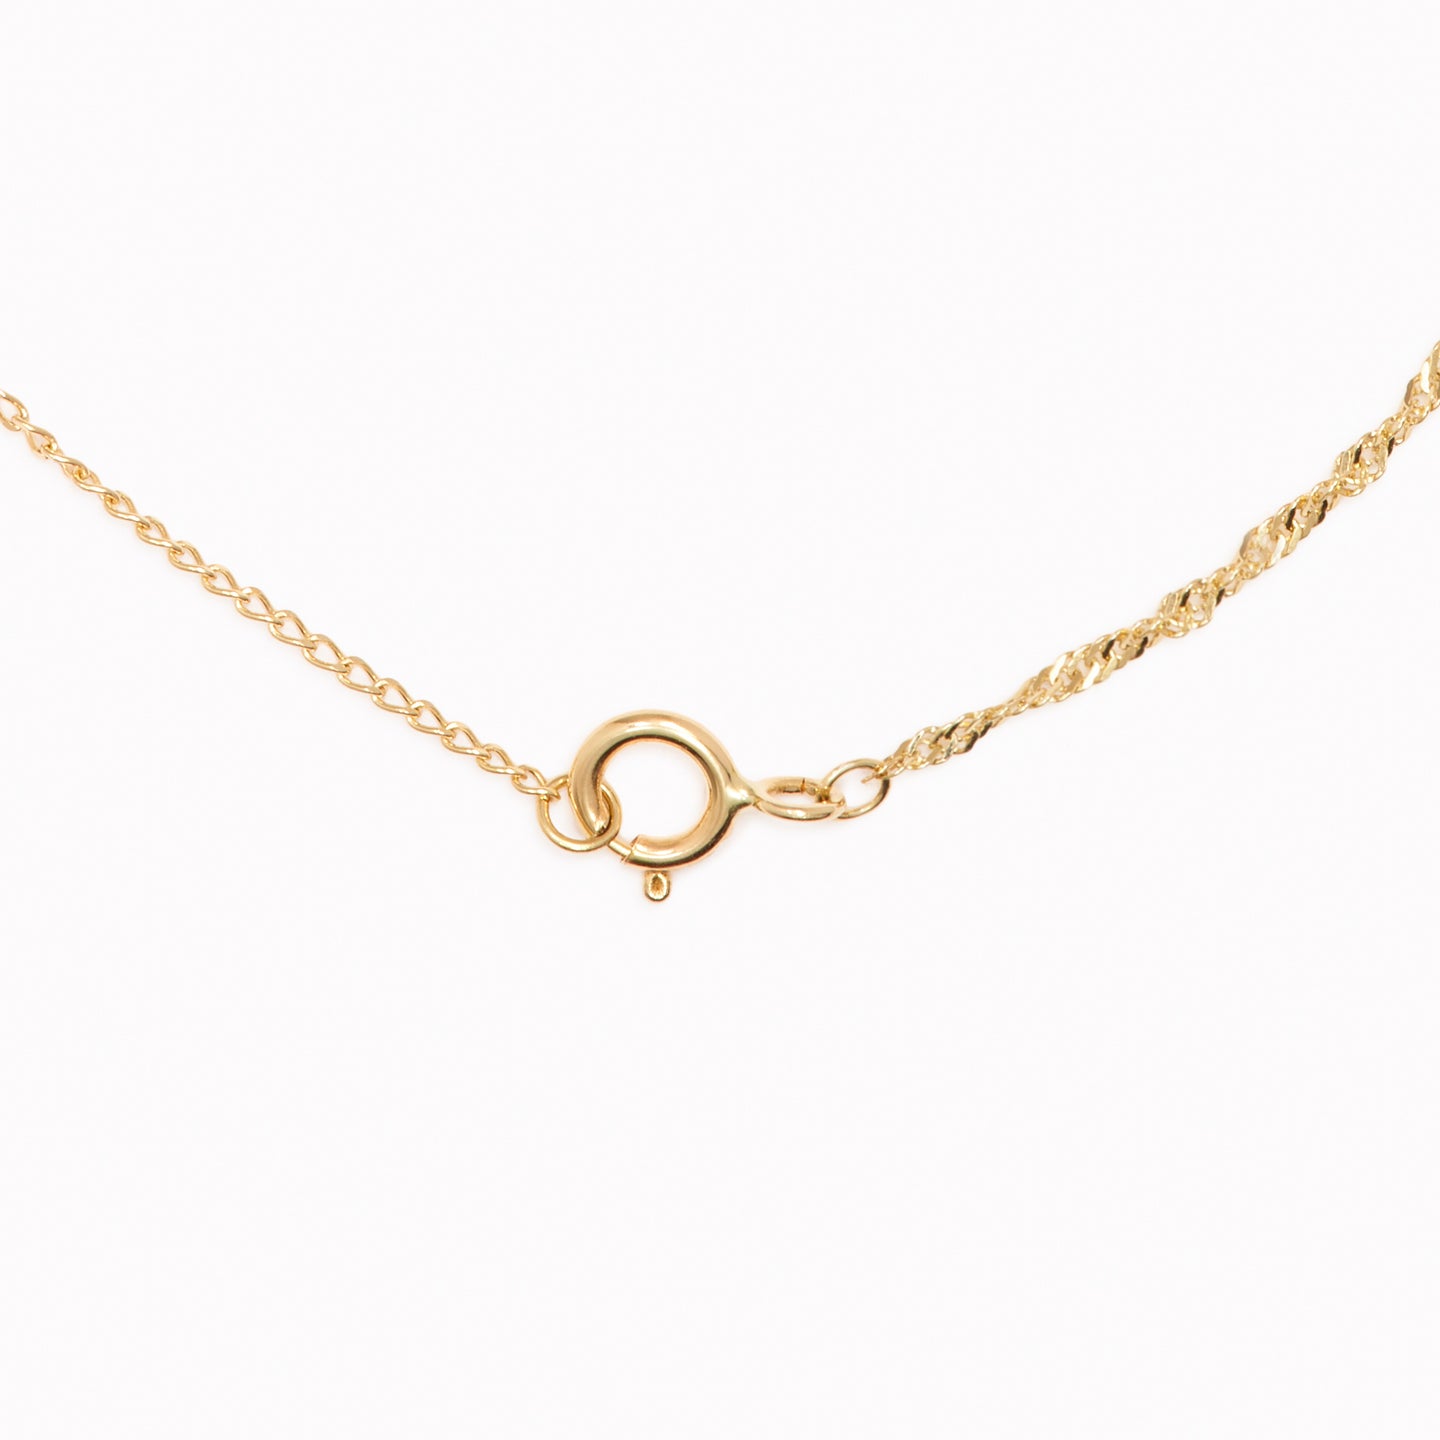 14k Gold Singapore Chain Necklace - Saskia